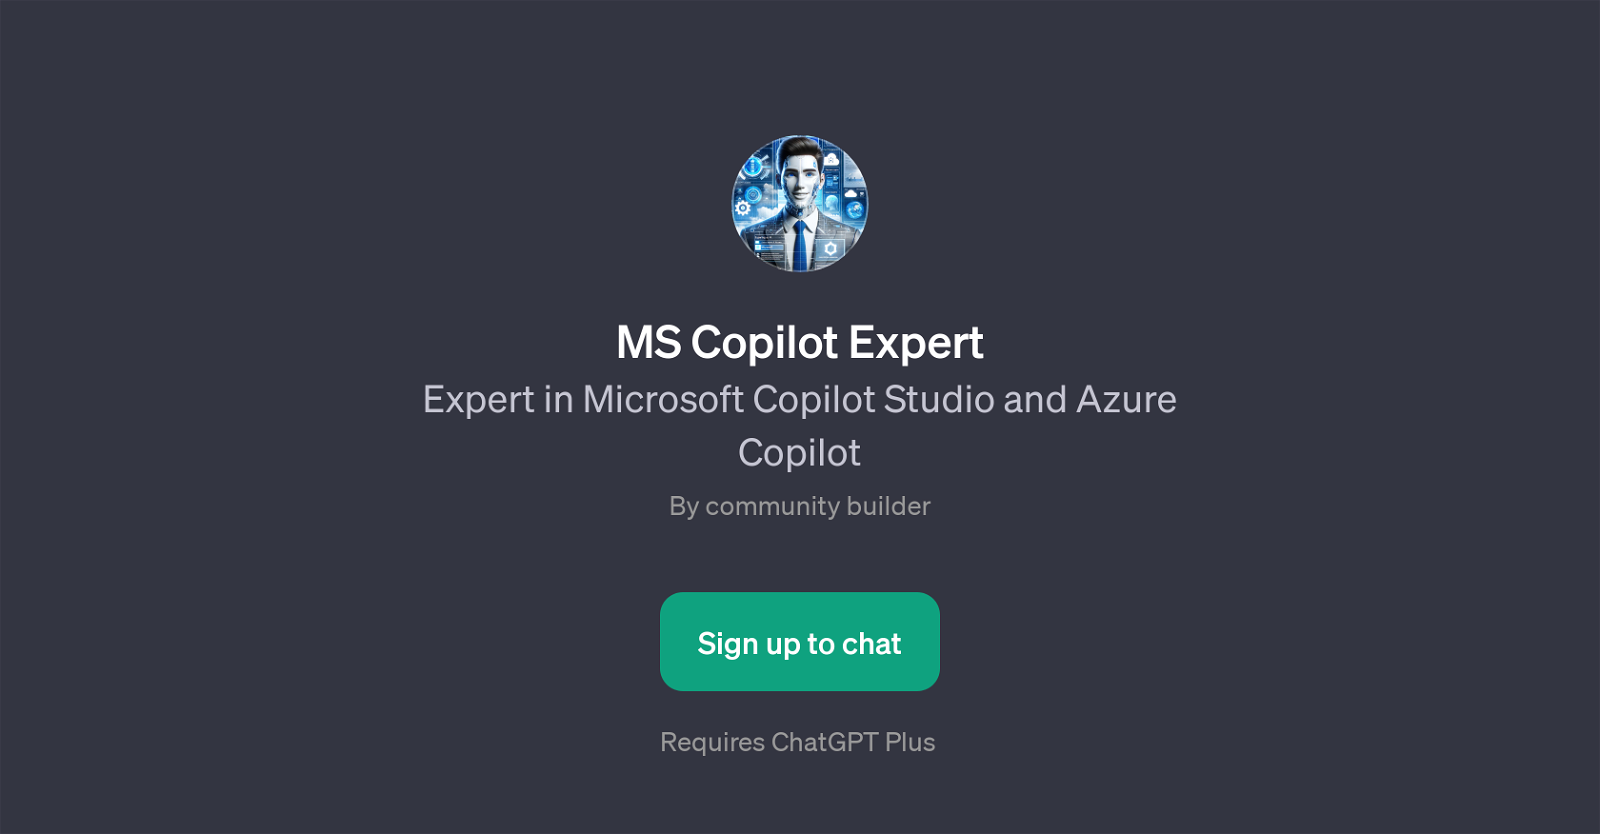 MS Copilot Expert website